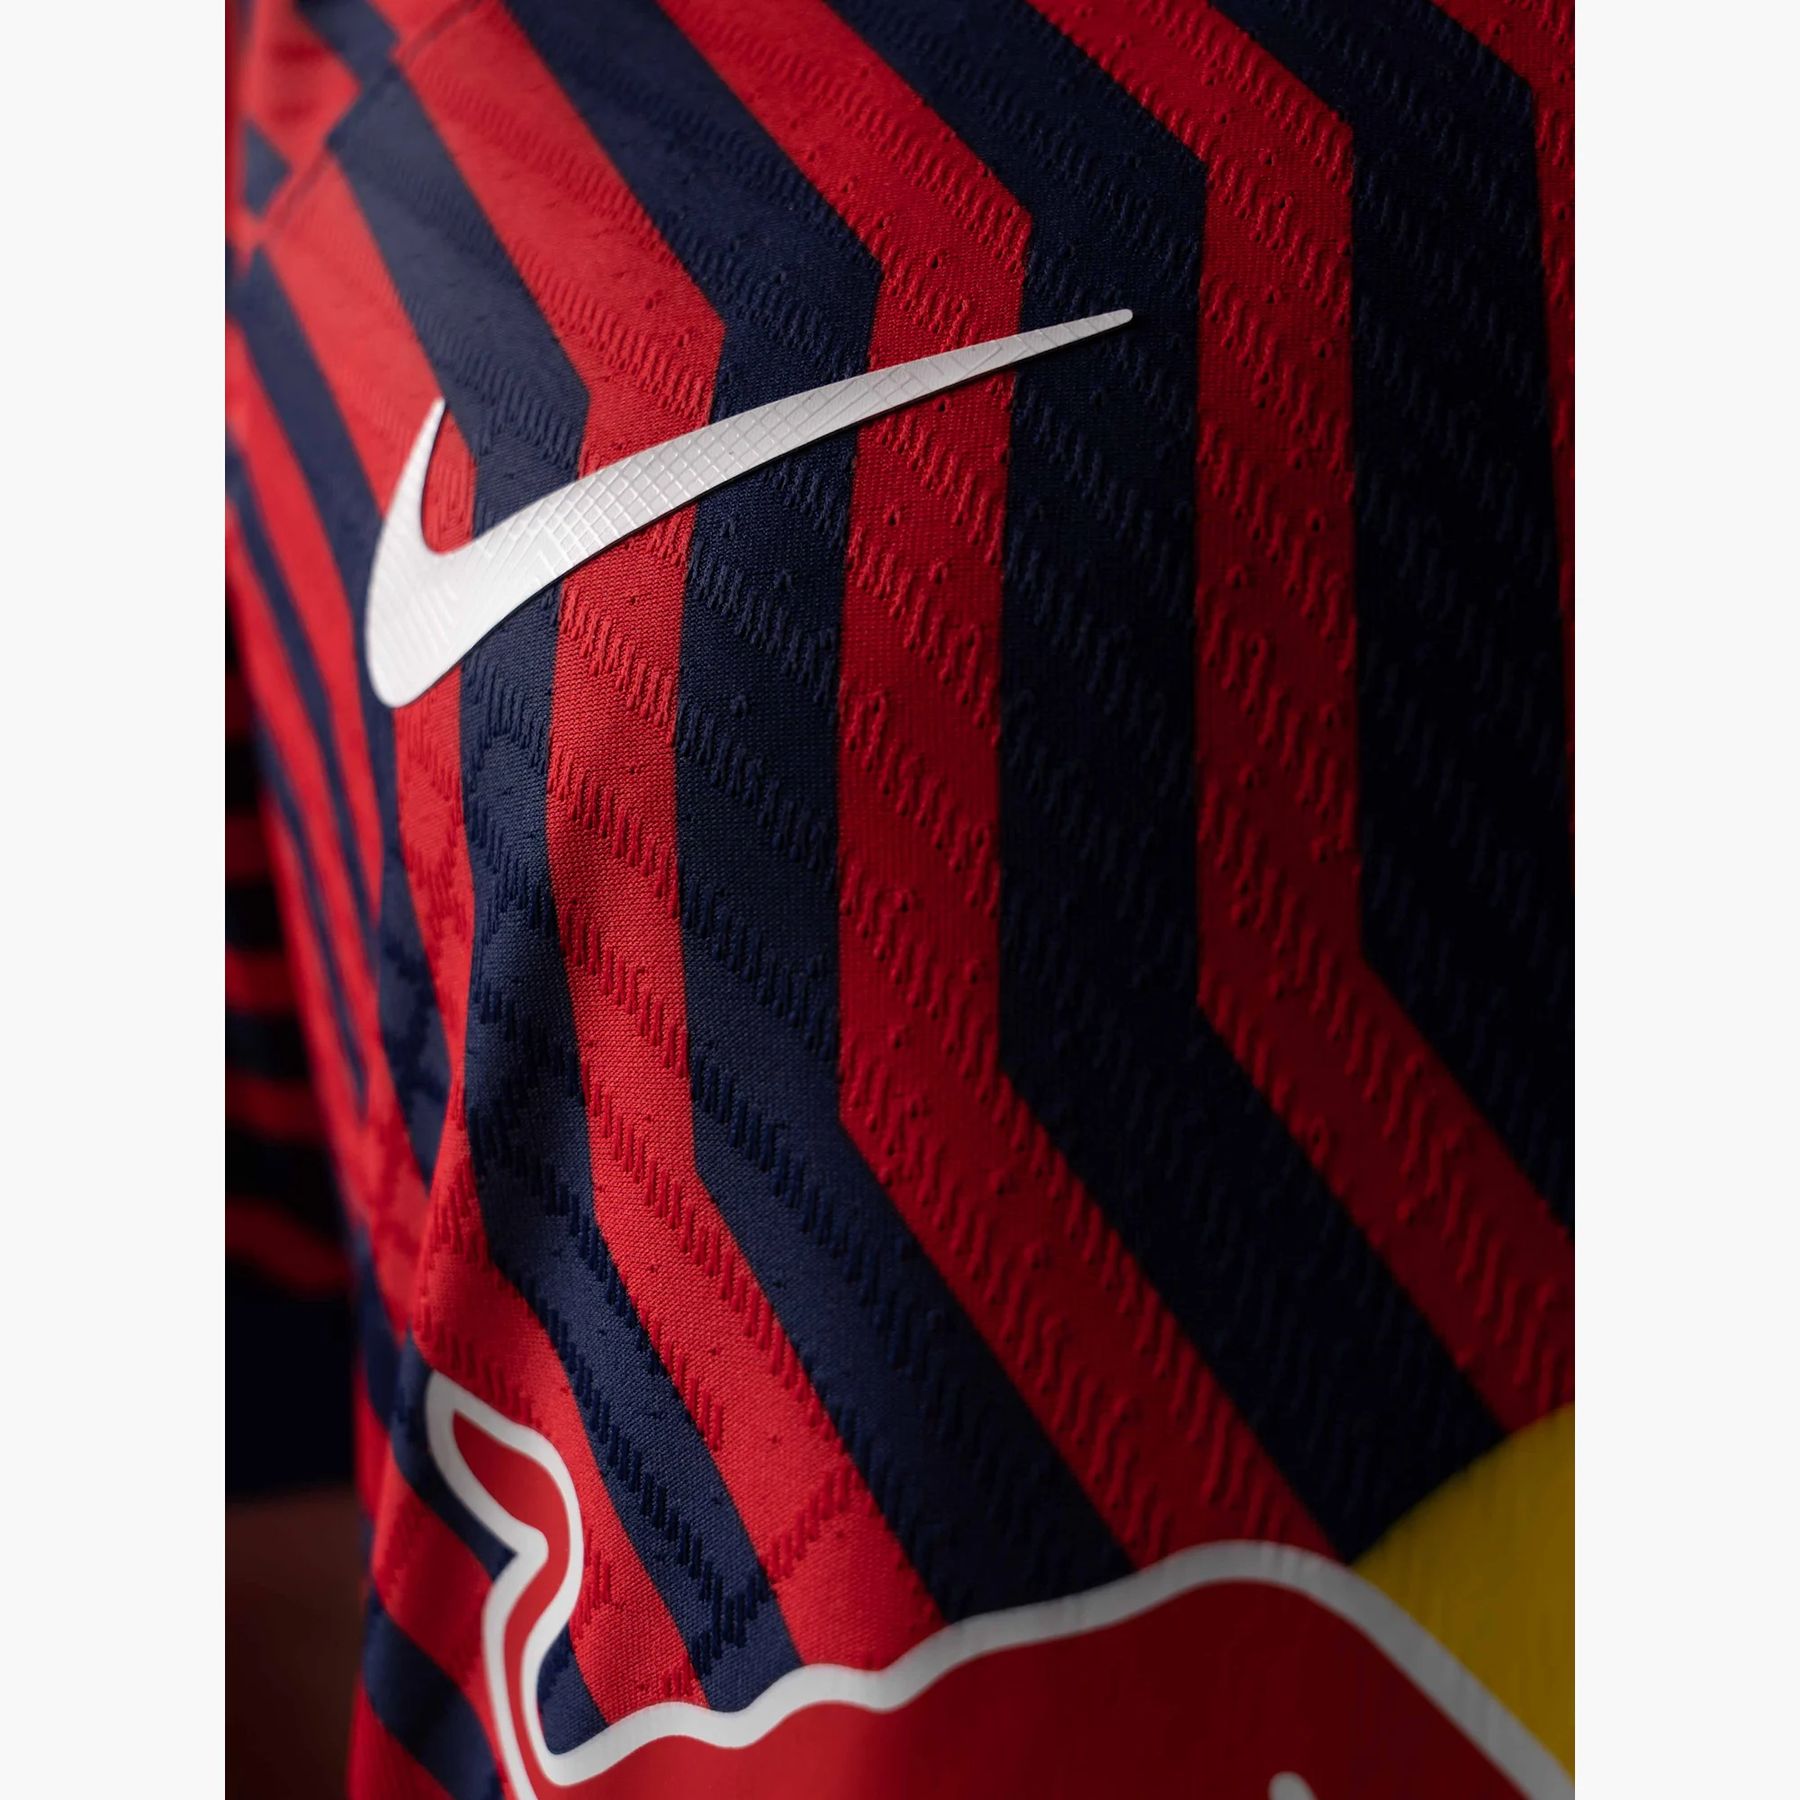 Nike RB Leipzig 20-21 Home Kit Released + Away Kit Colors - New Nike Elite  Team - Footy Headlines